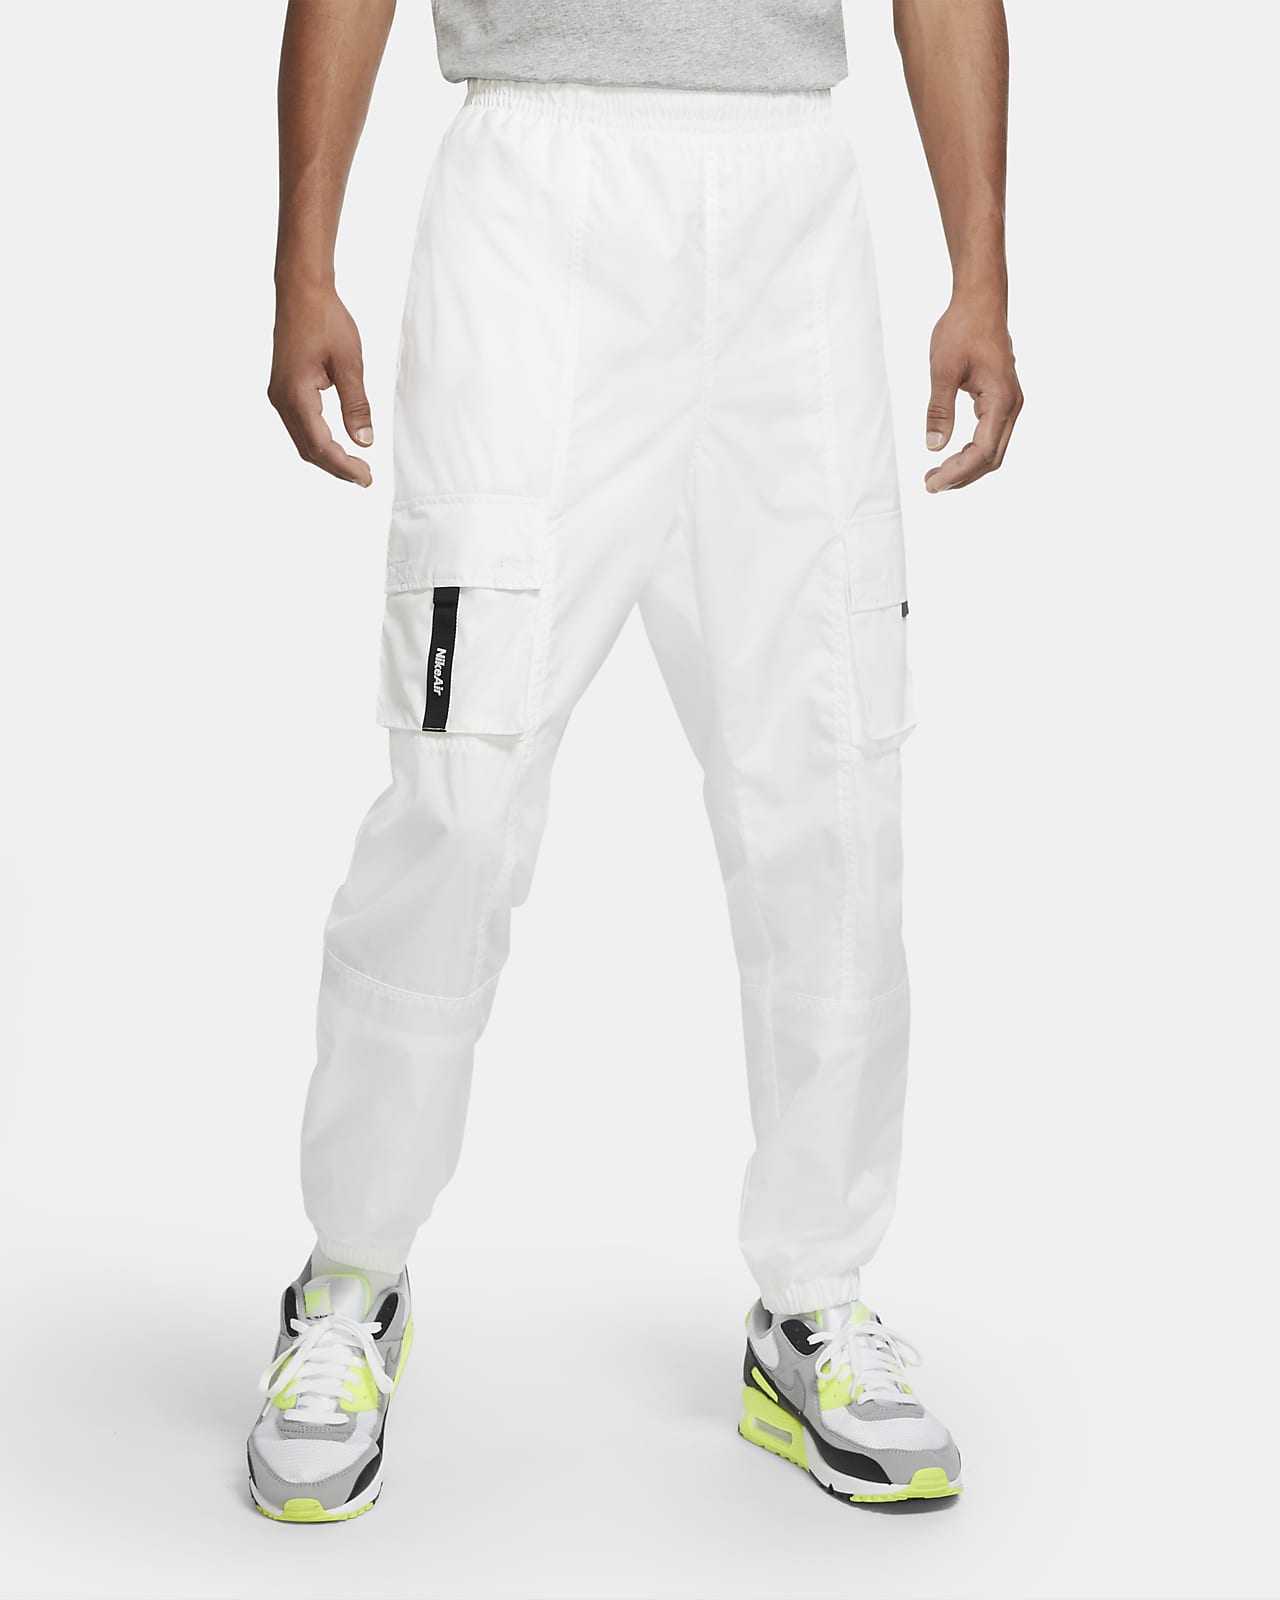 Pantalones de tejido Woven hombre Nike Air. Nike.com